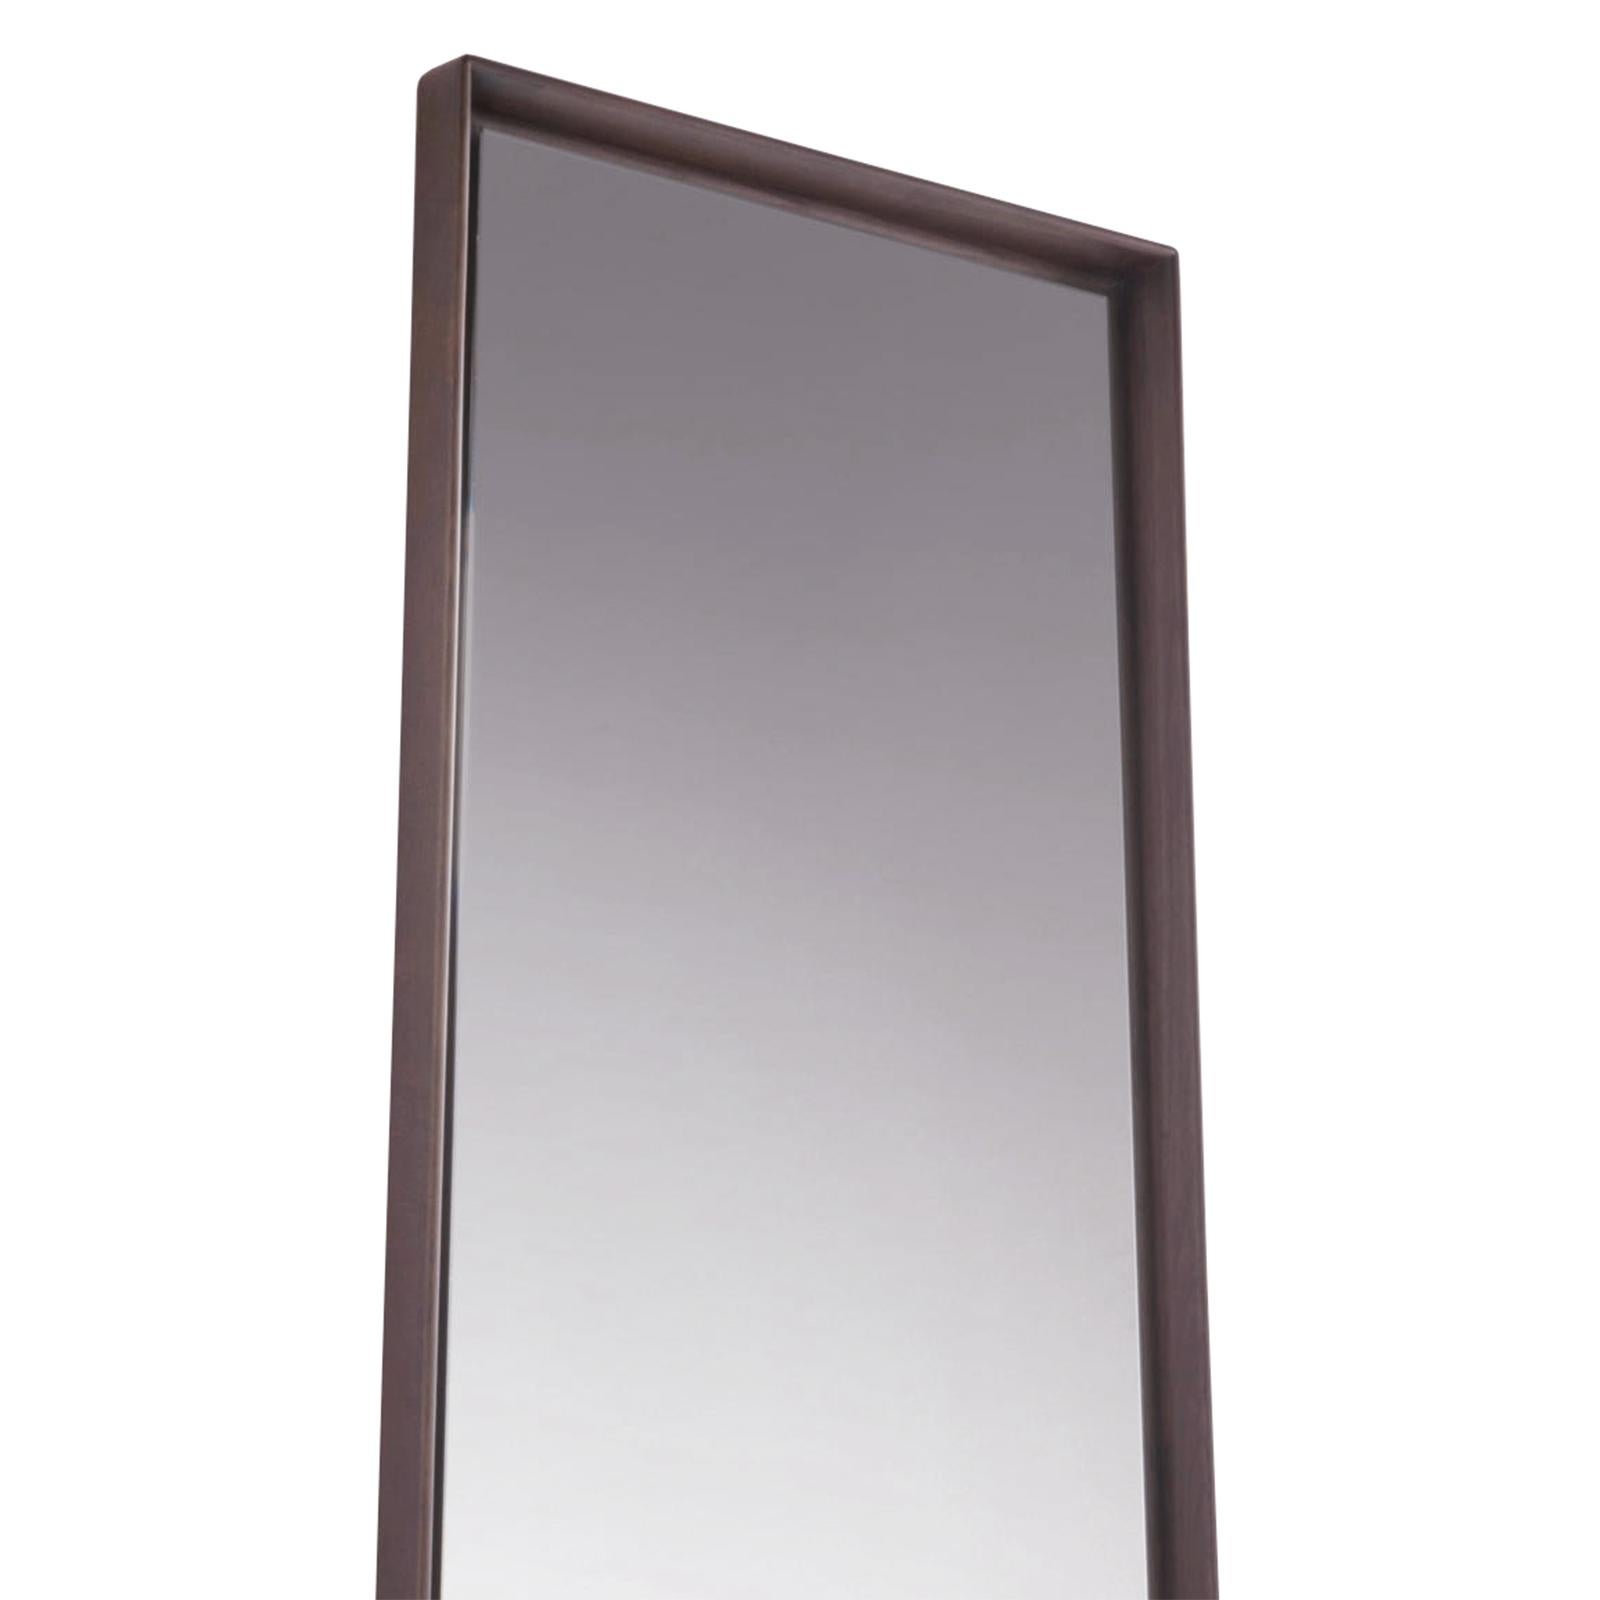 Panneau de miroir en frêne long avec frêne massif
cadre en bois avec verre miroir. Mur
miroir ou miroir de sol.
Egalement disponible en panneau grand miroir en frêne.